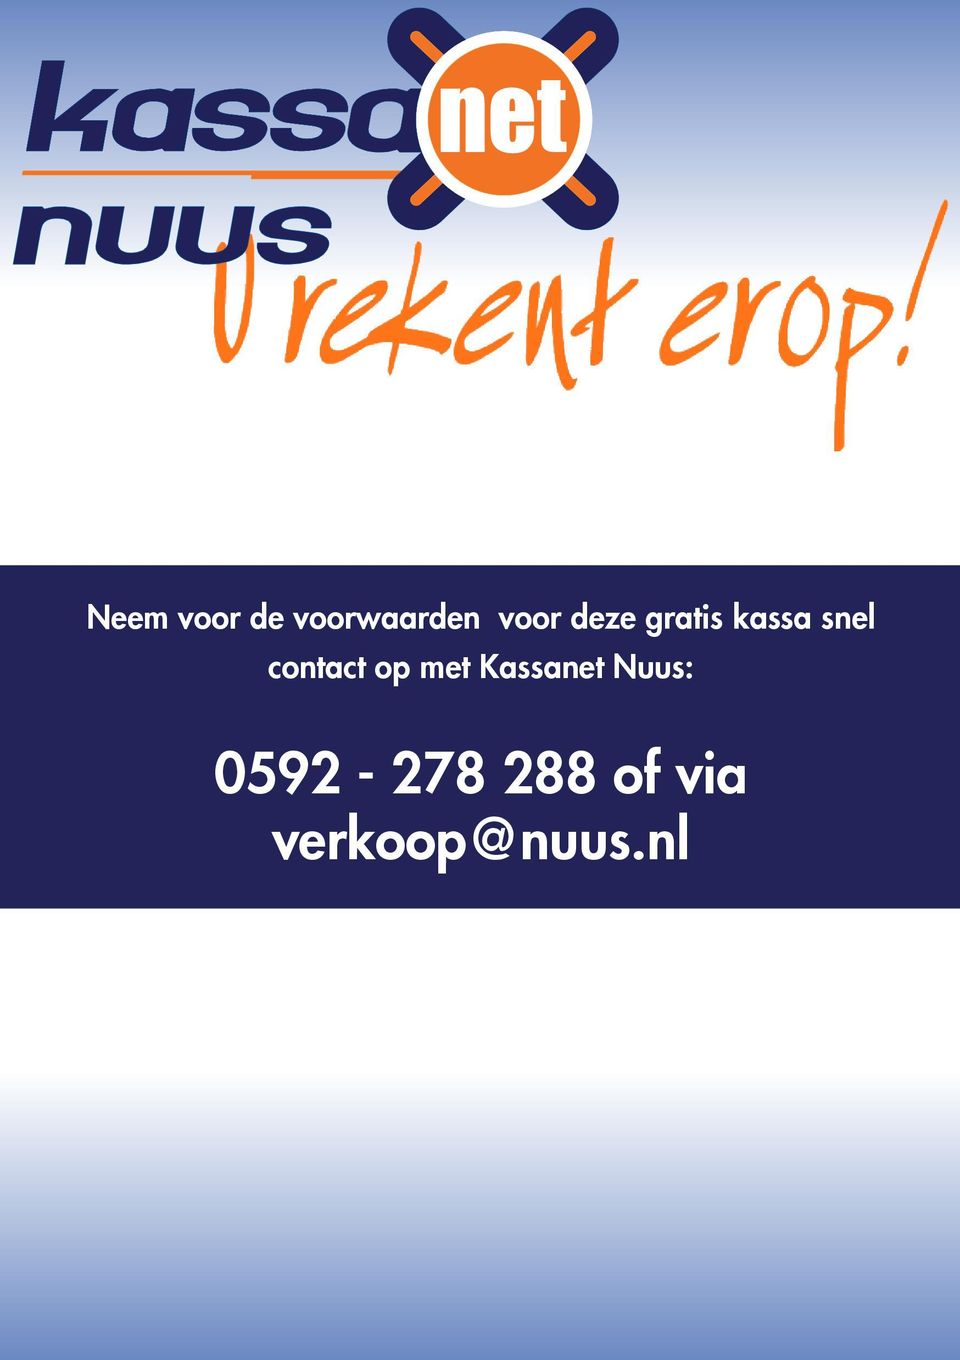 contact op met Kassanet Nuus: